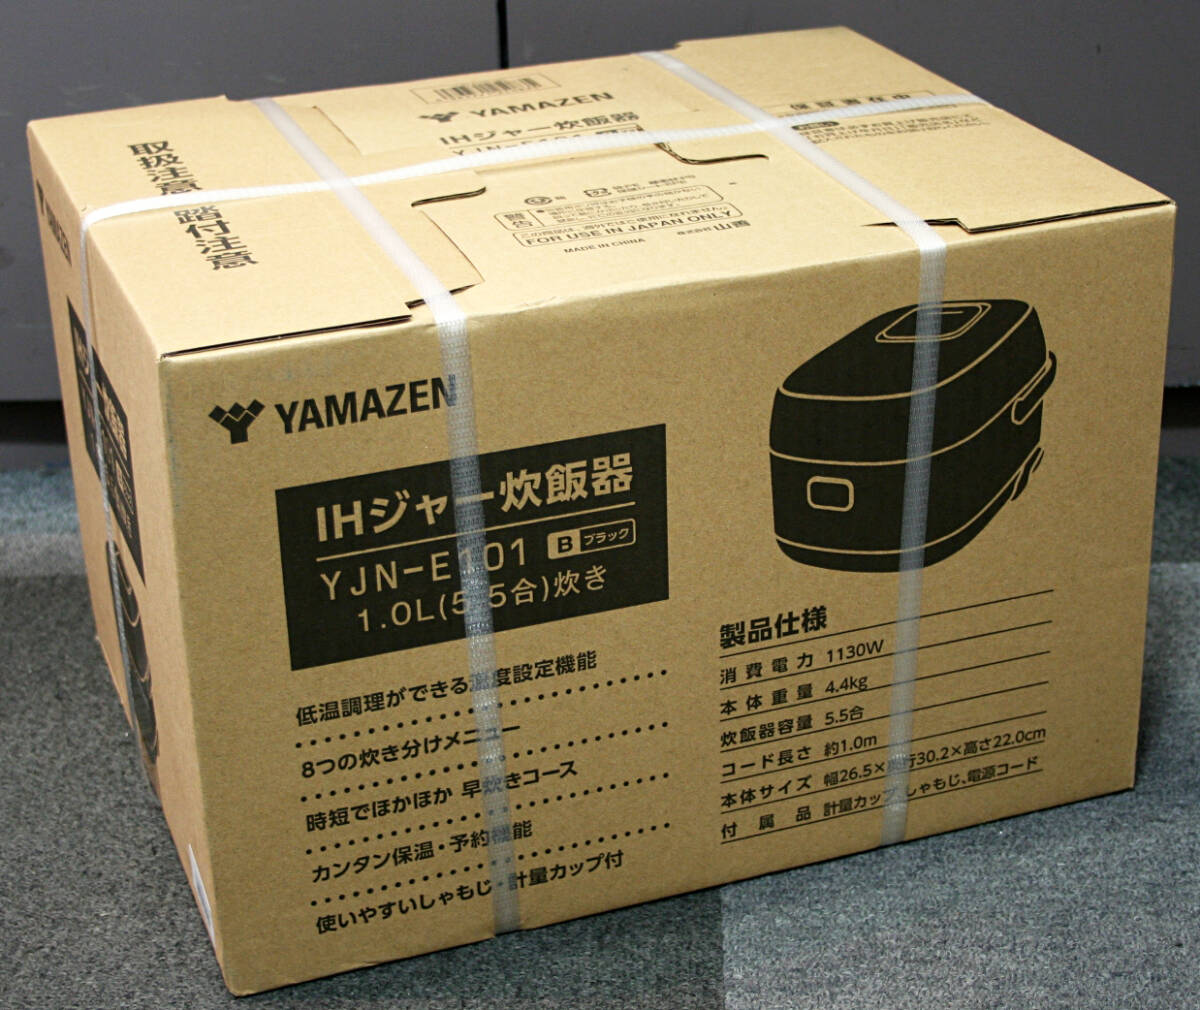  новый товар нераспечатанный *[ YAMAZEN ] гора .IH рисоварка 1.0L 5.5.YJN-E101(B) * 1 иен старт 